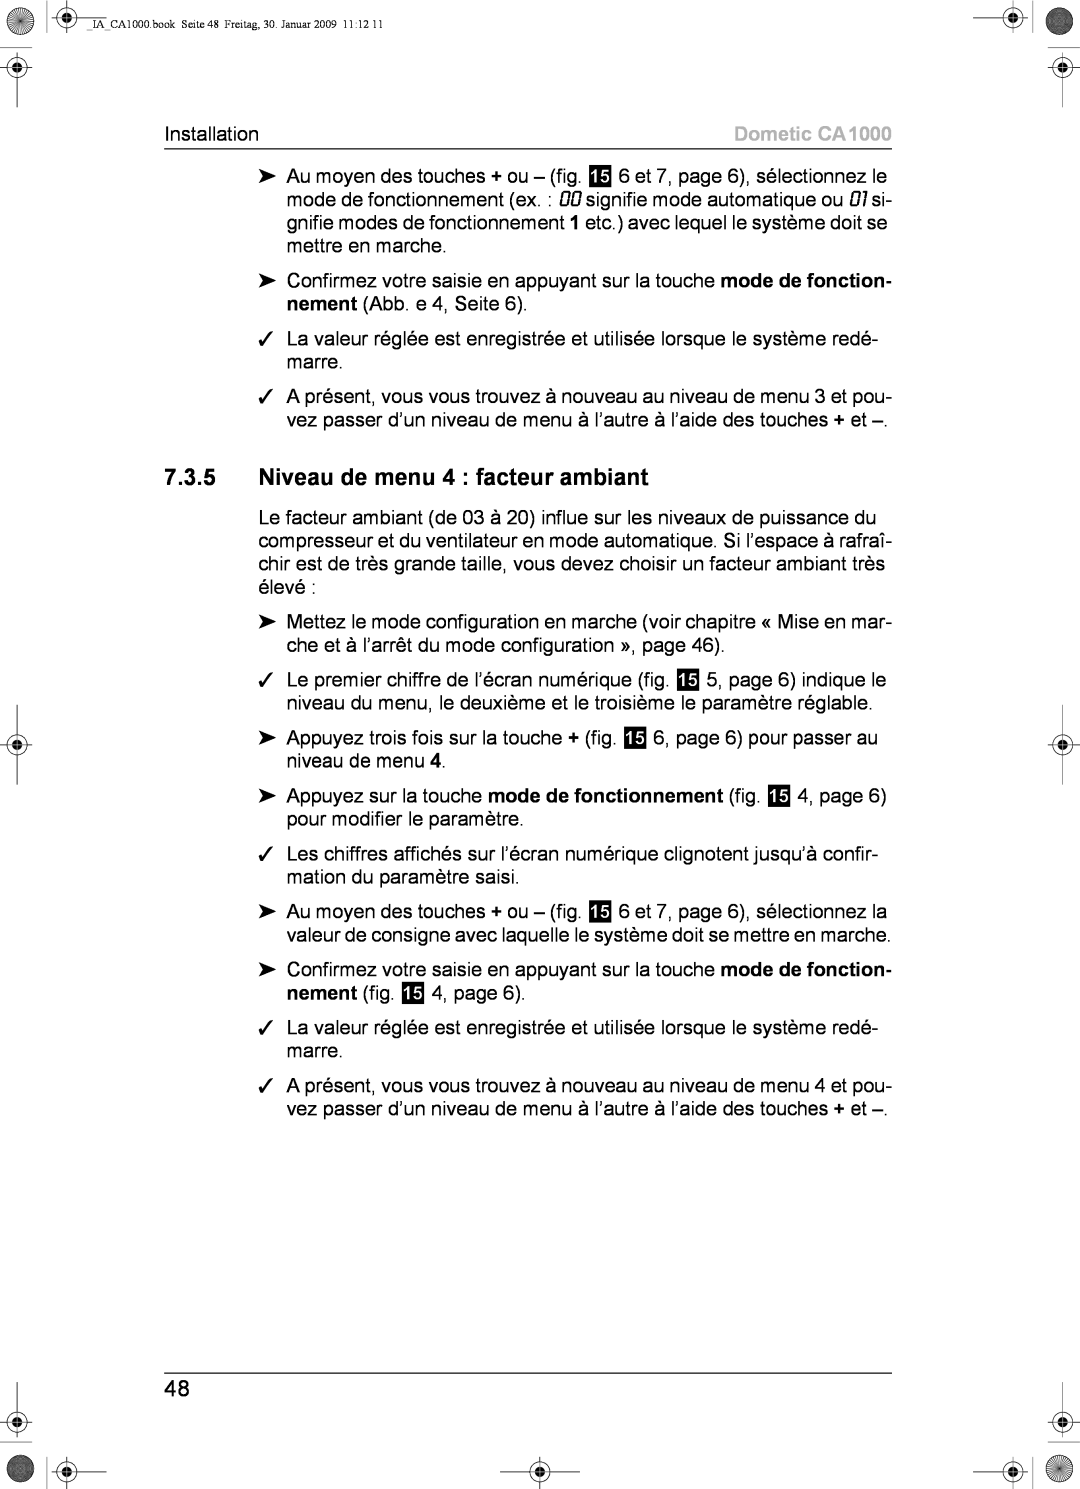 Dometic installation manual 7.3.5Niveau de menu 4 facteur ambiant, Dometic CA1000 